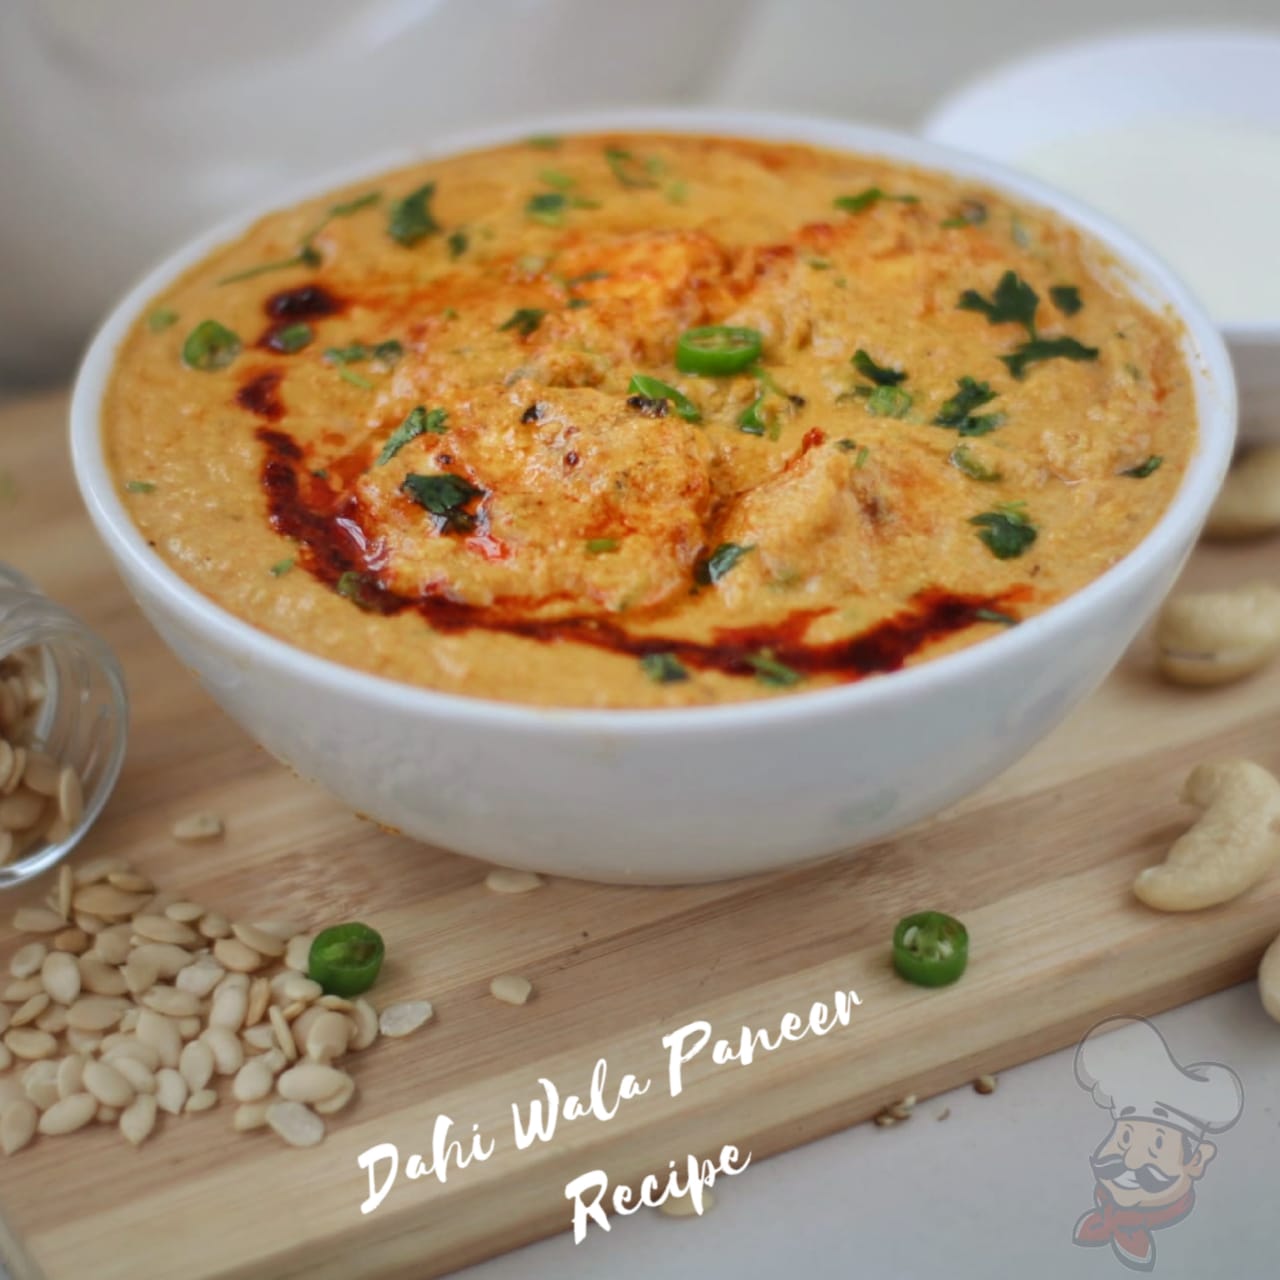 Dahi wala paneer recipe